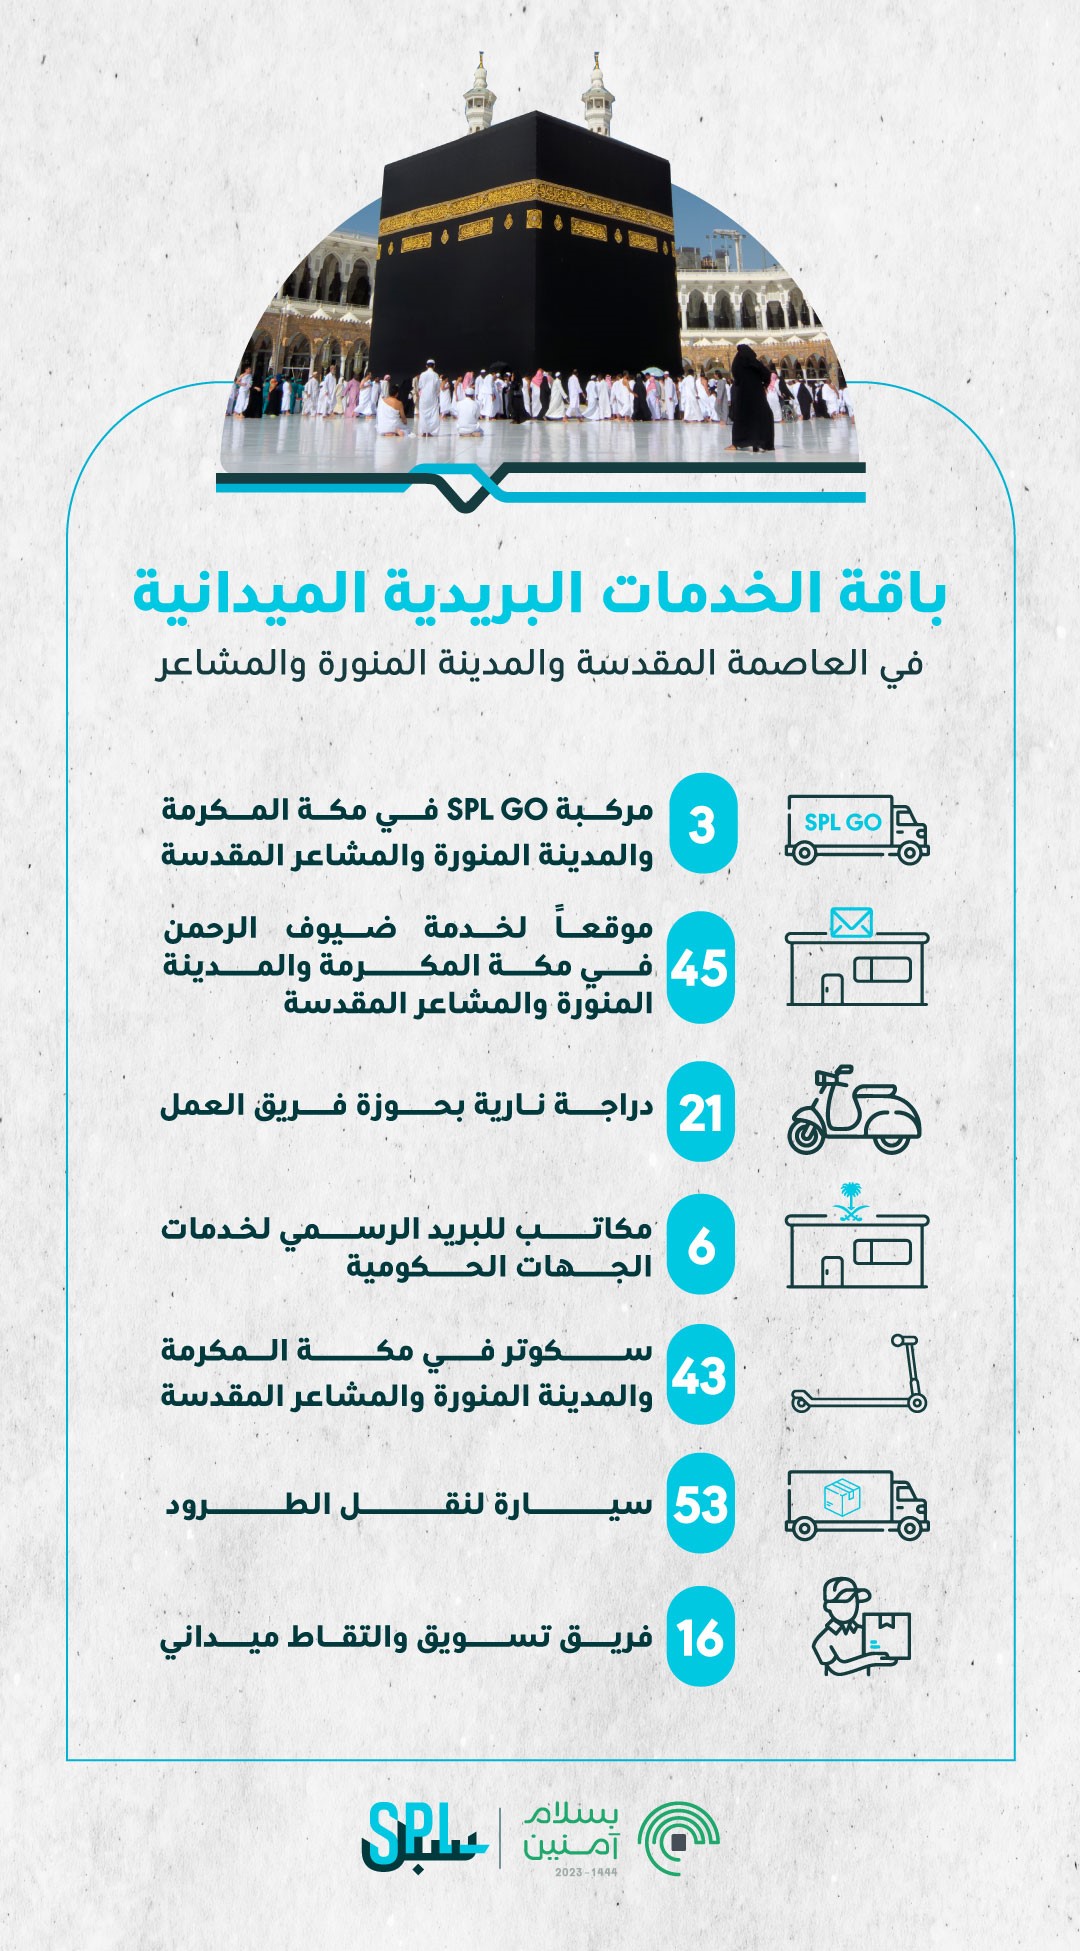 مؤسسة البريد السعودي |سبل تقدم العديد من الخدمات الميدانية في المشاعر المقدسة